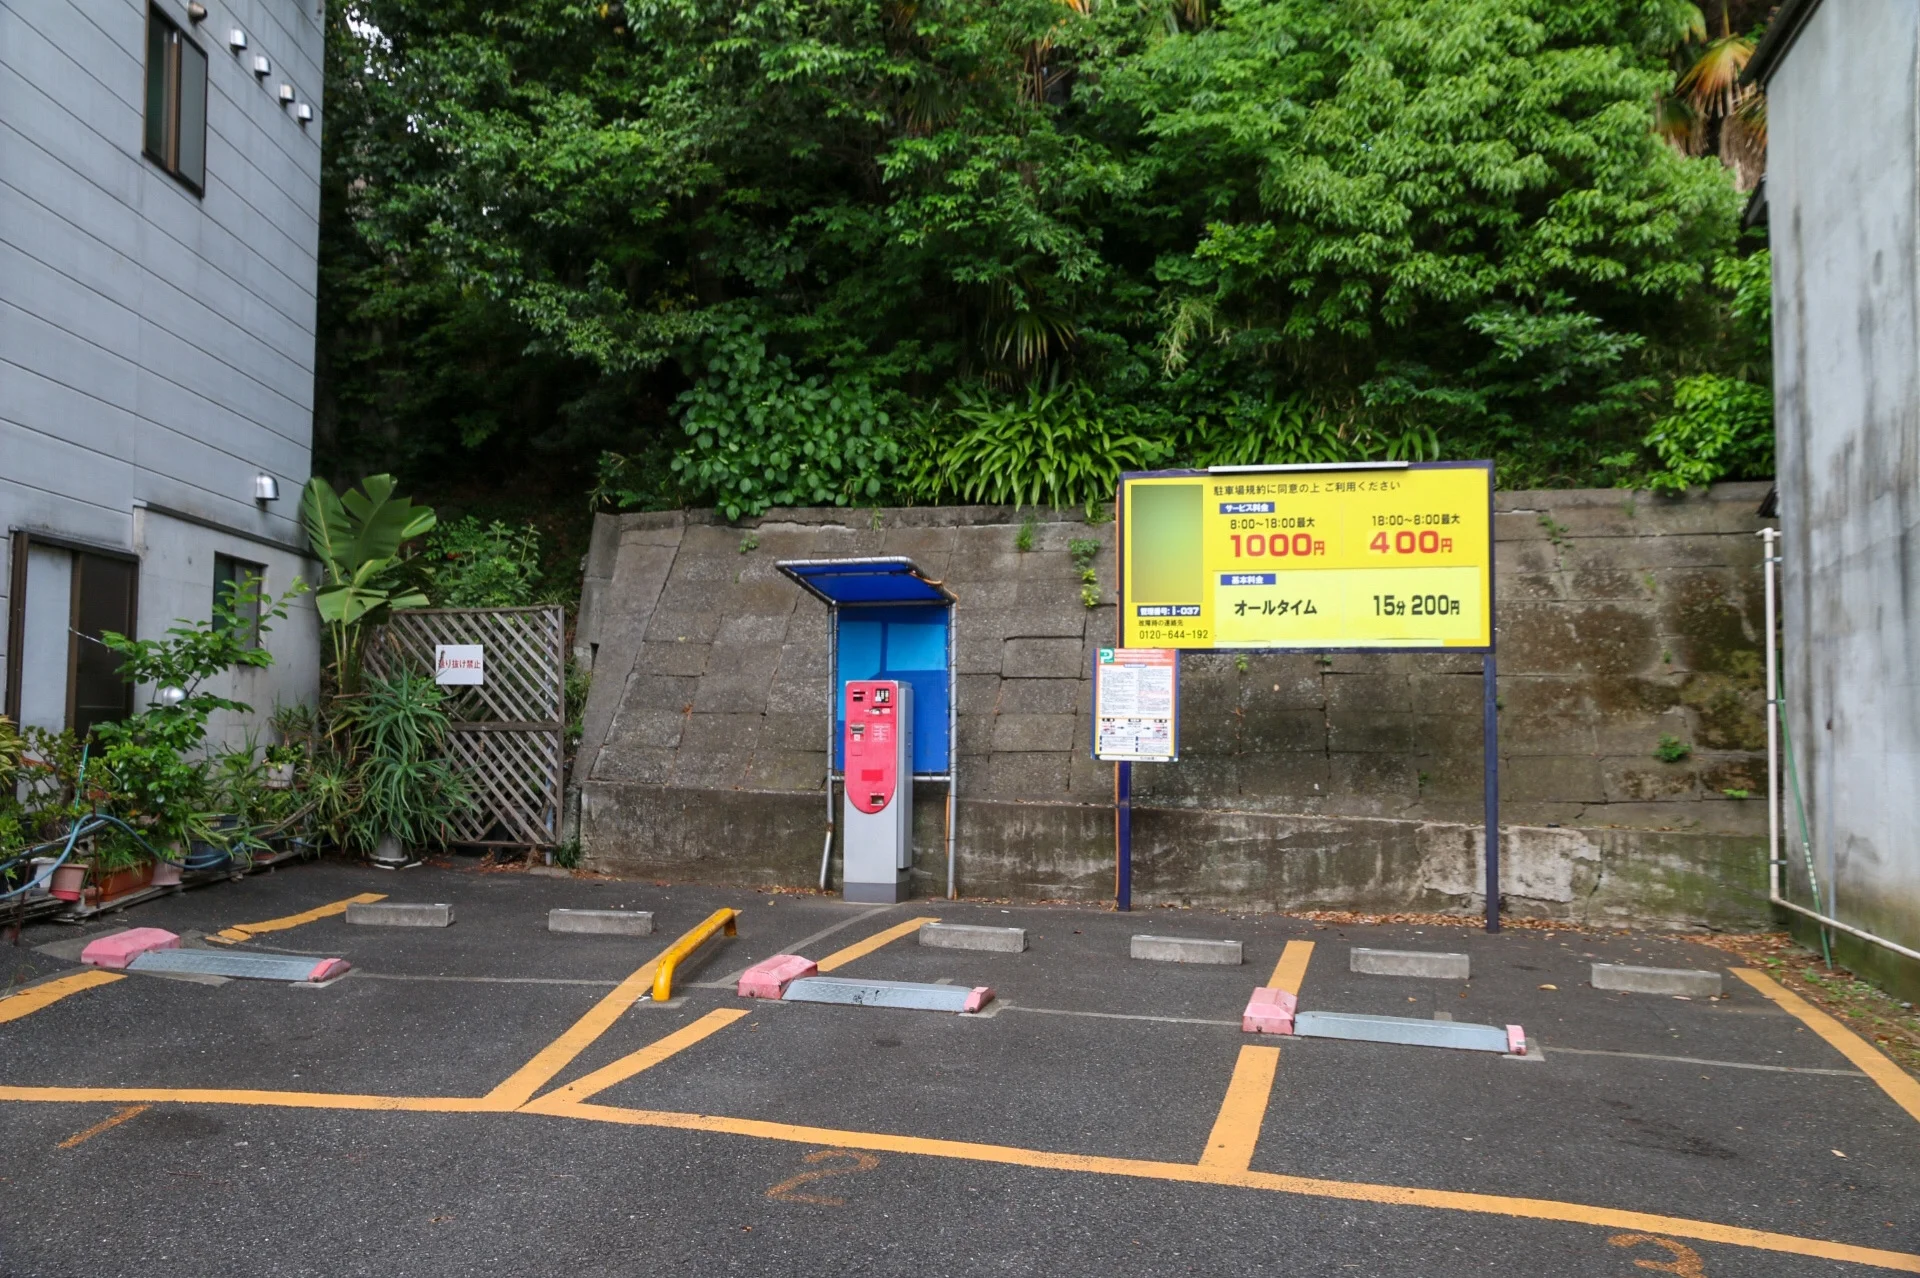 日本路邊停車場,停車場料金告示牌